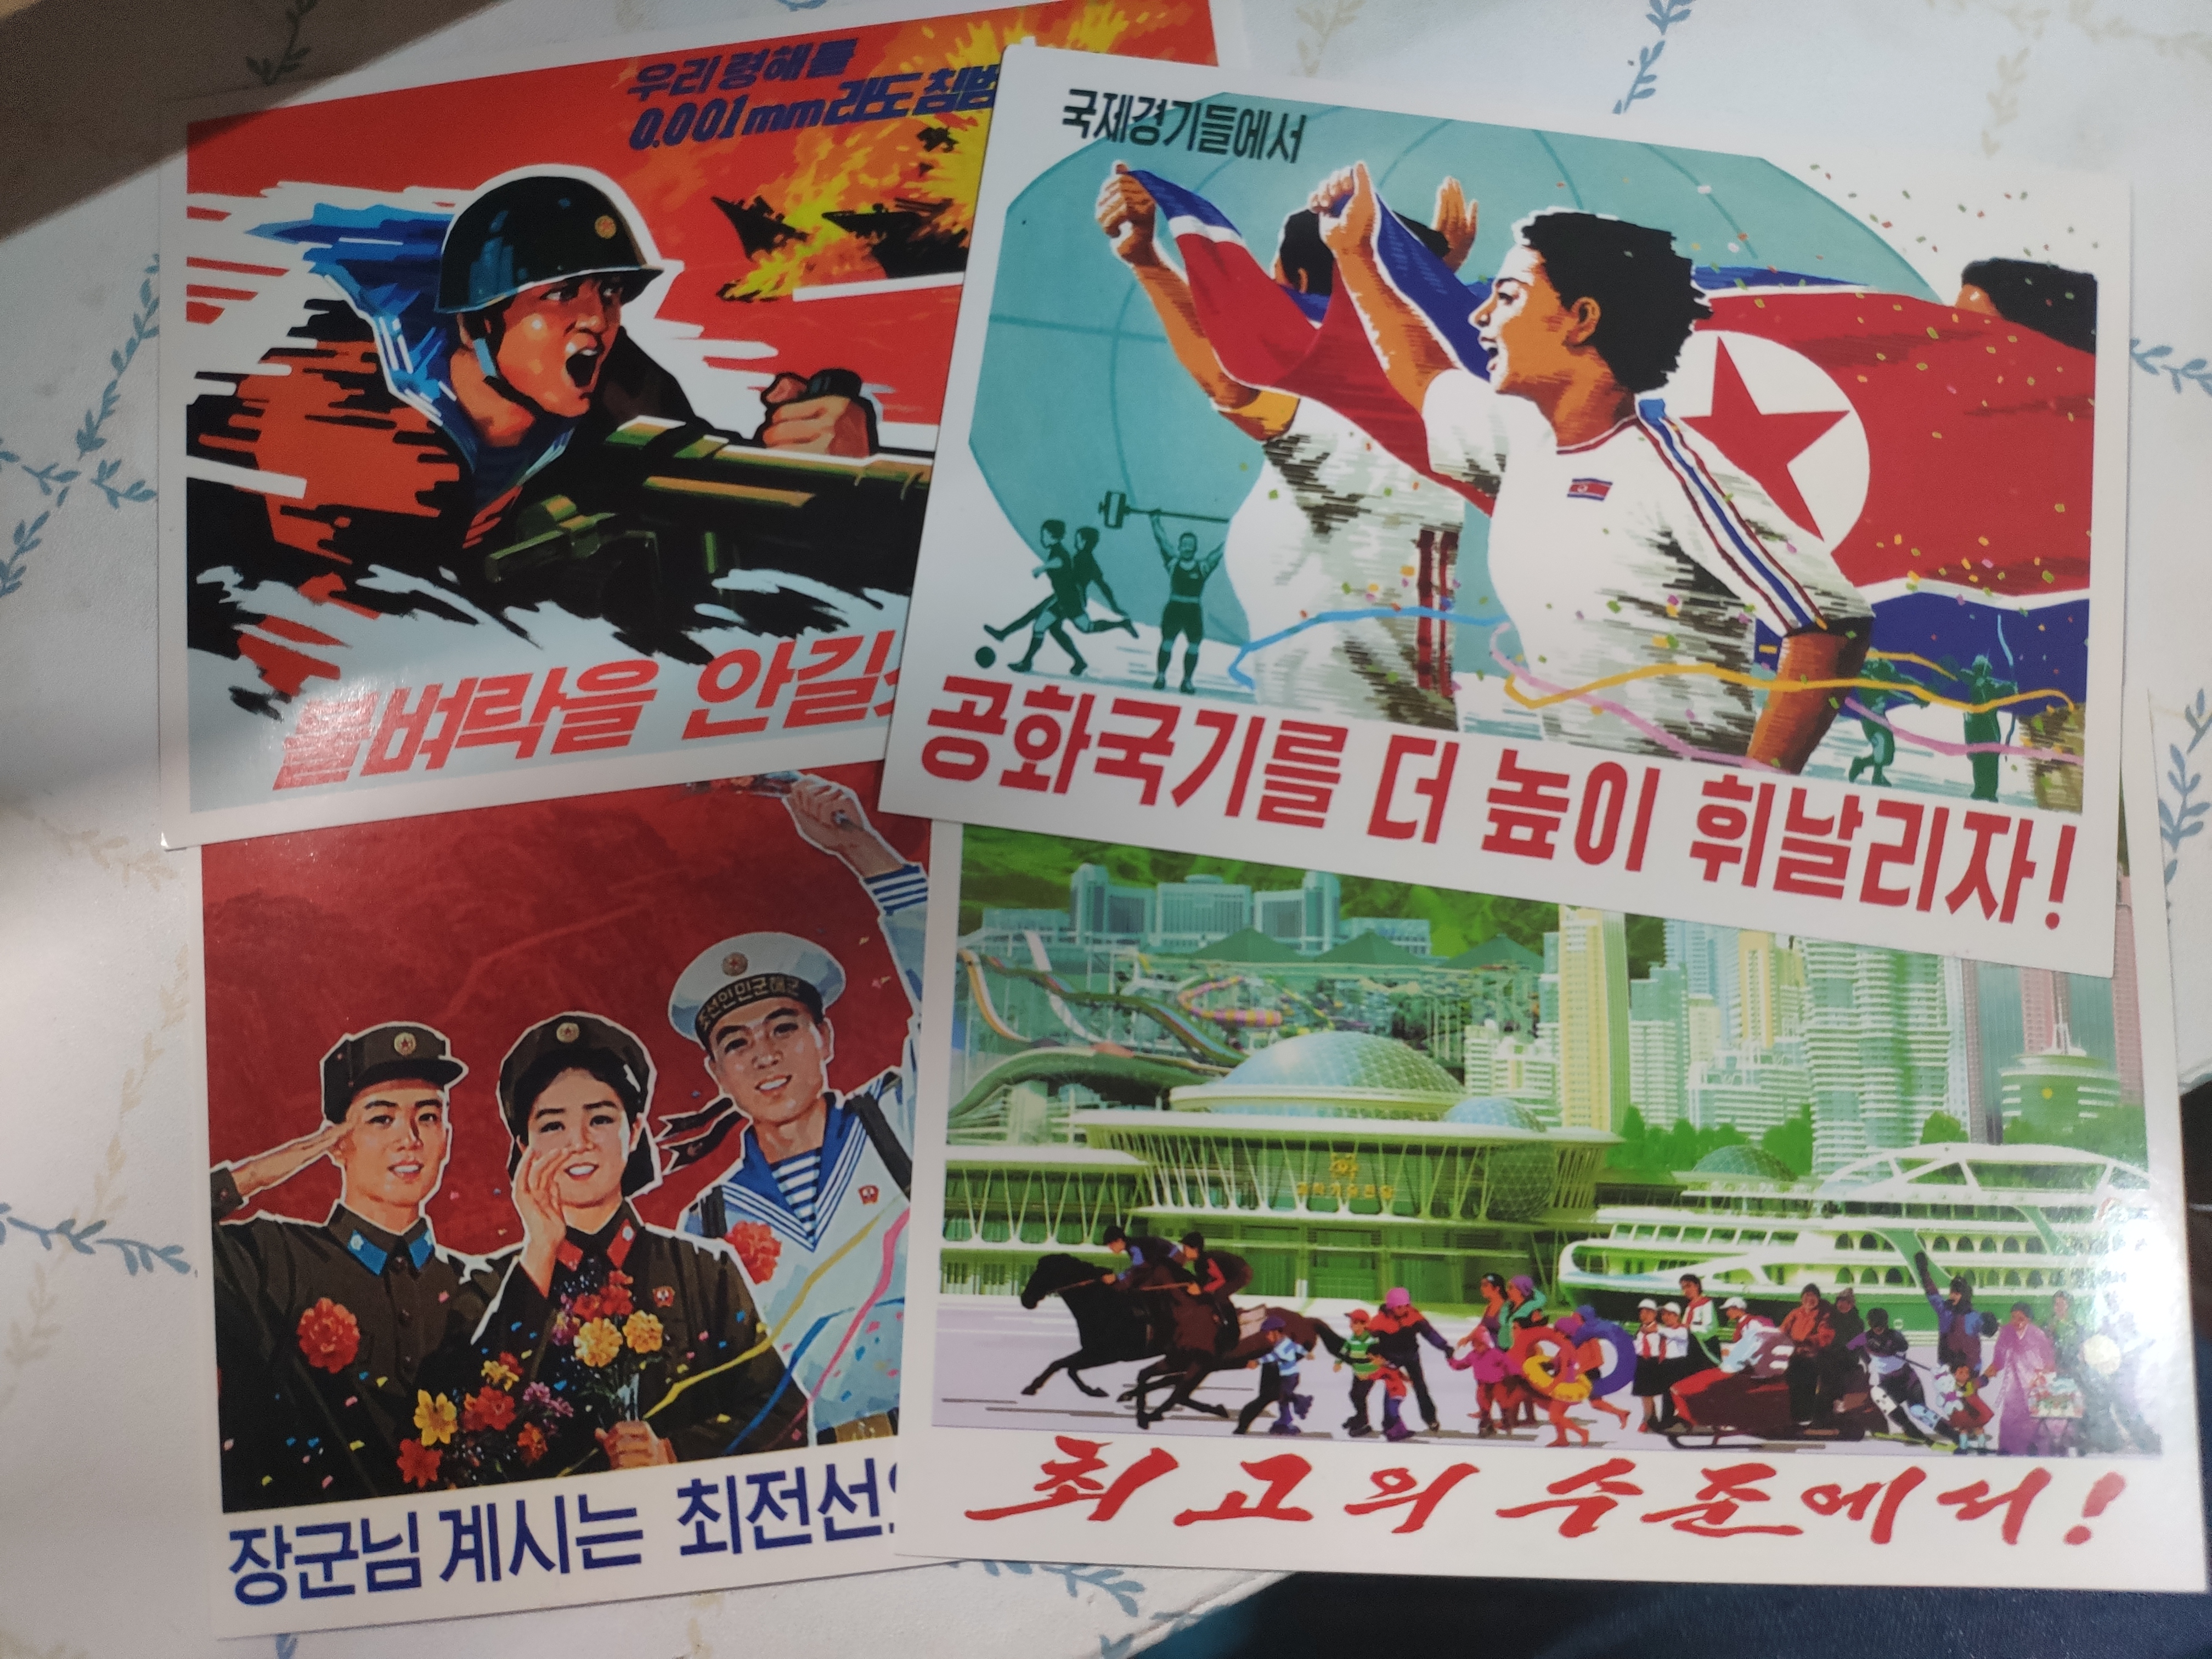 宣传画款式的明信片极具朝鲜特色